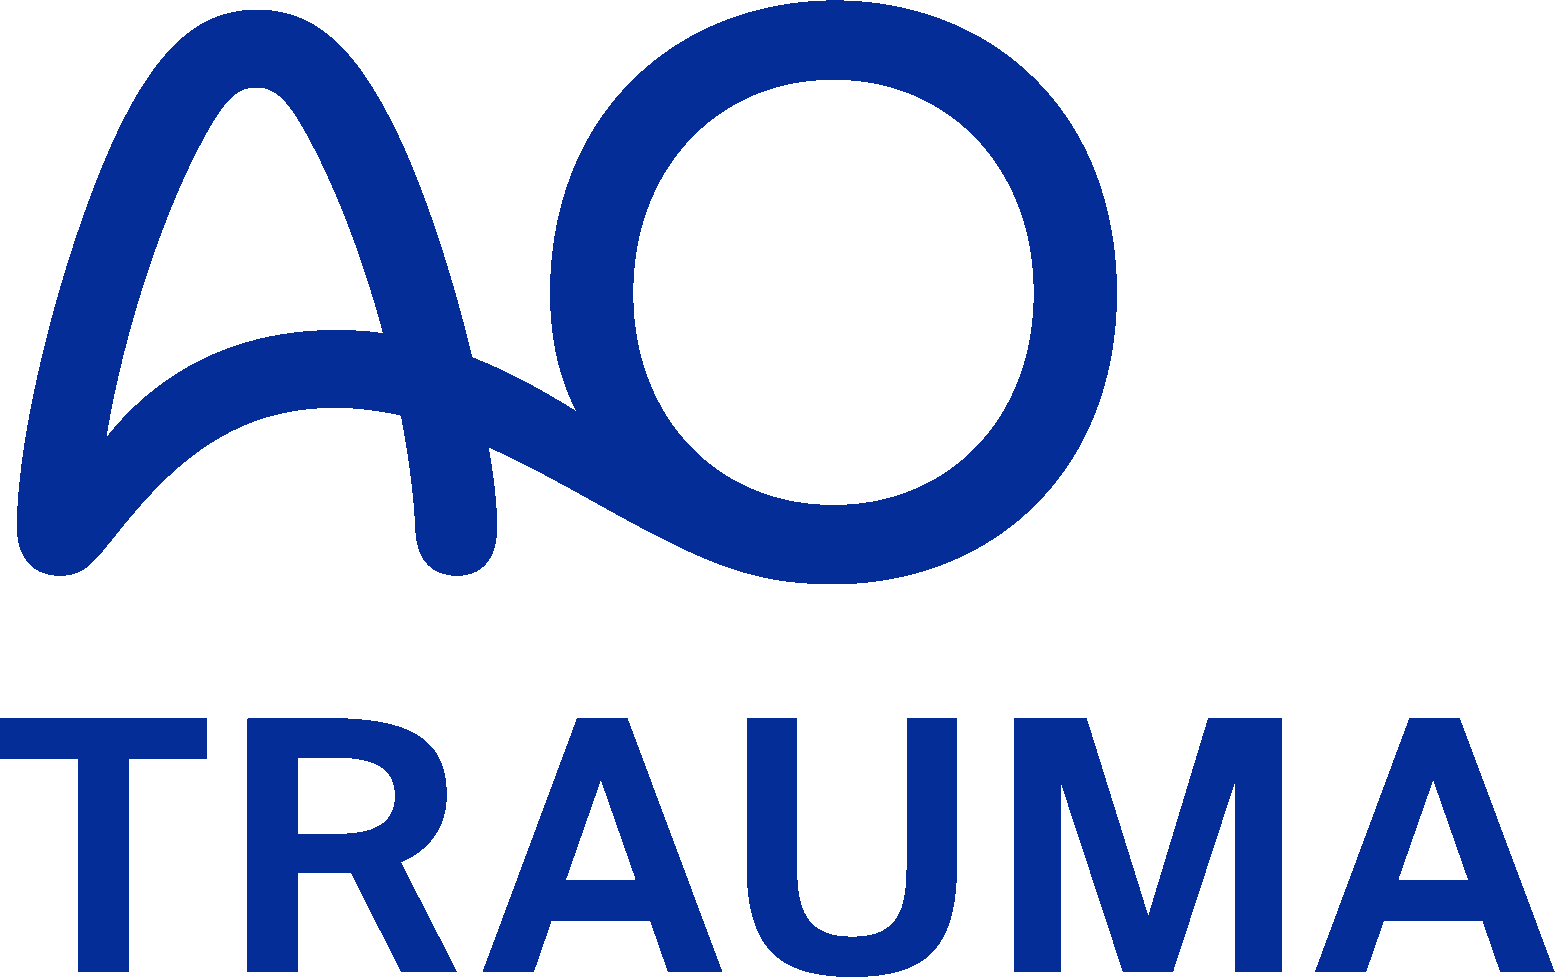 AO Trauma Logo